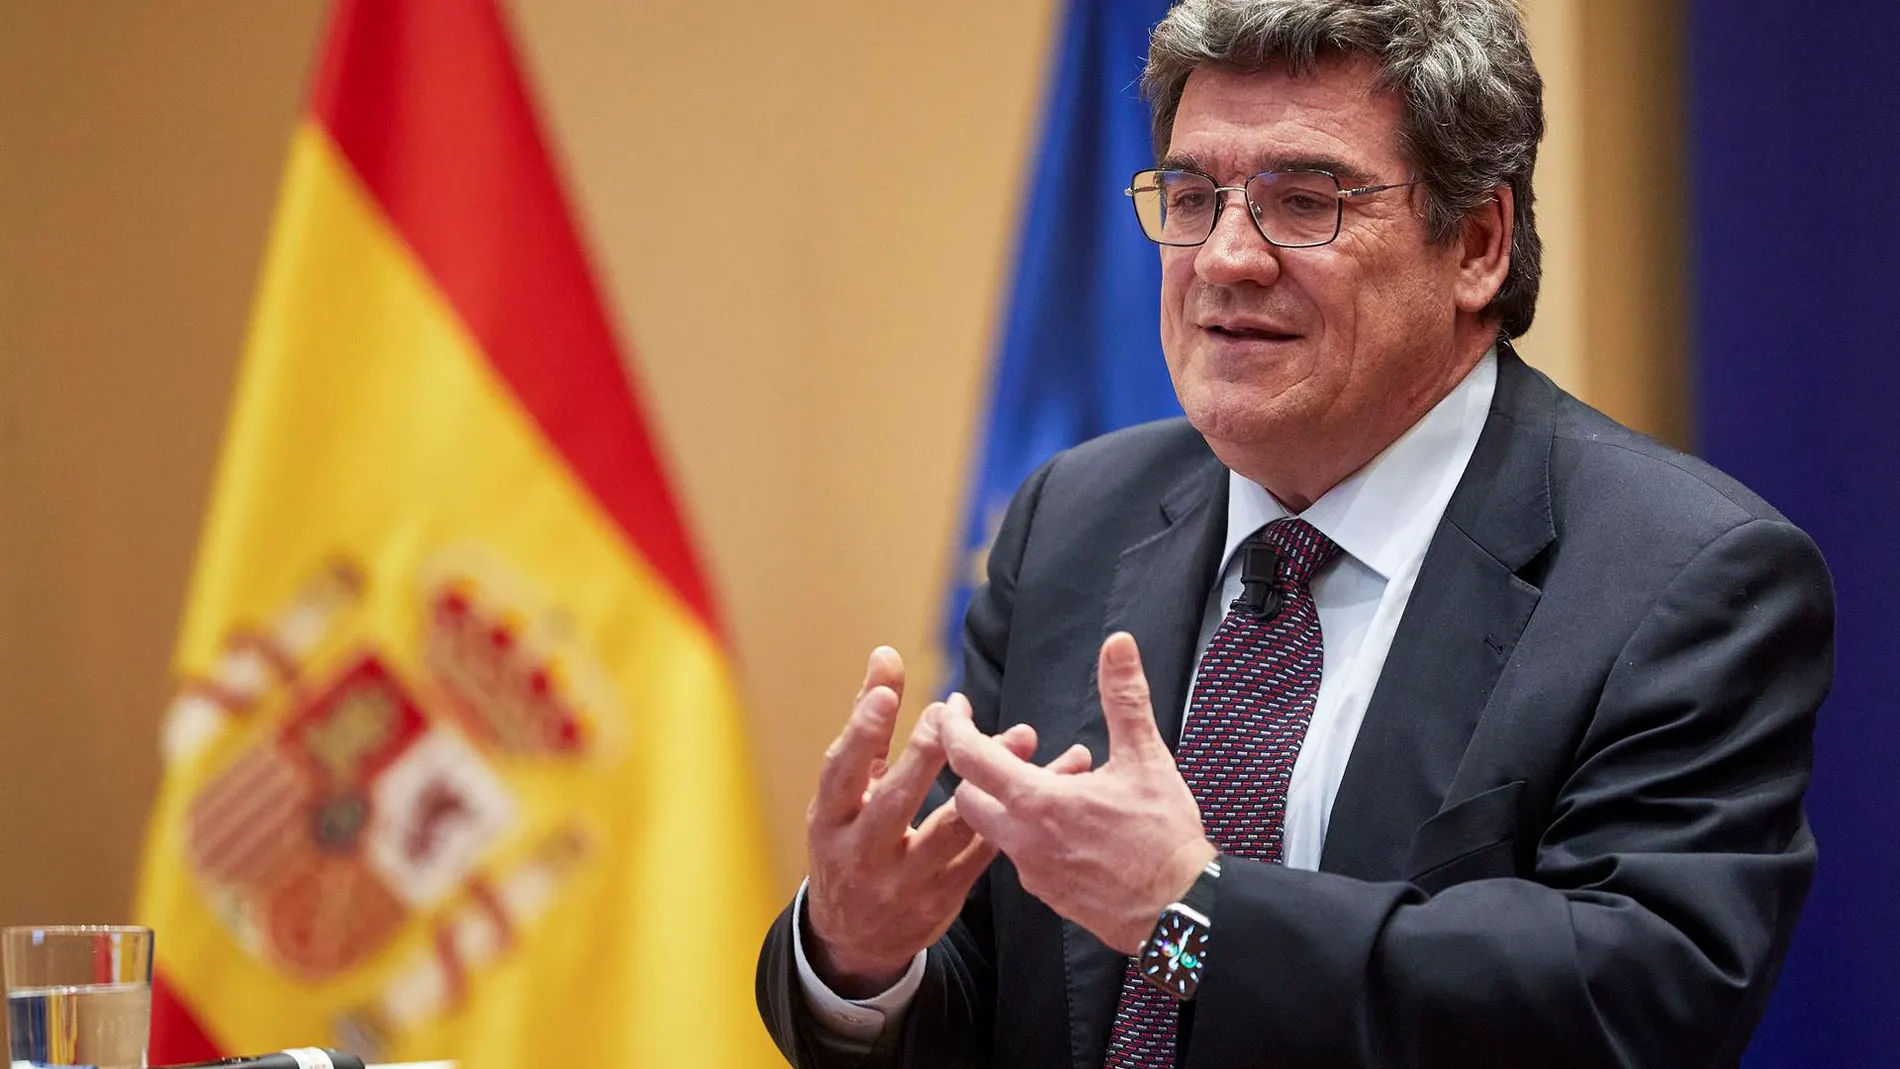 España supera los 20 millones de afiliados a la Seguridad Social y bate un nuevo récord